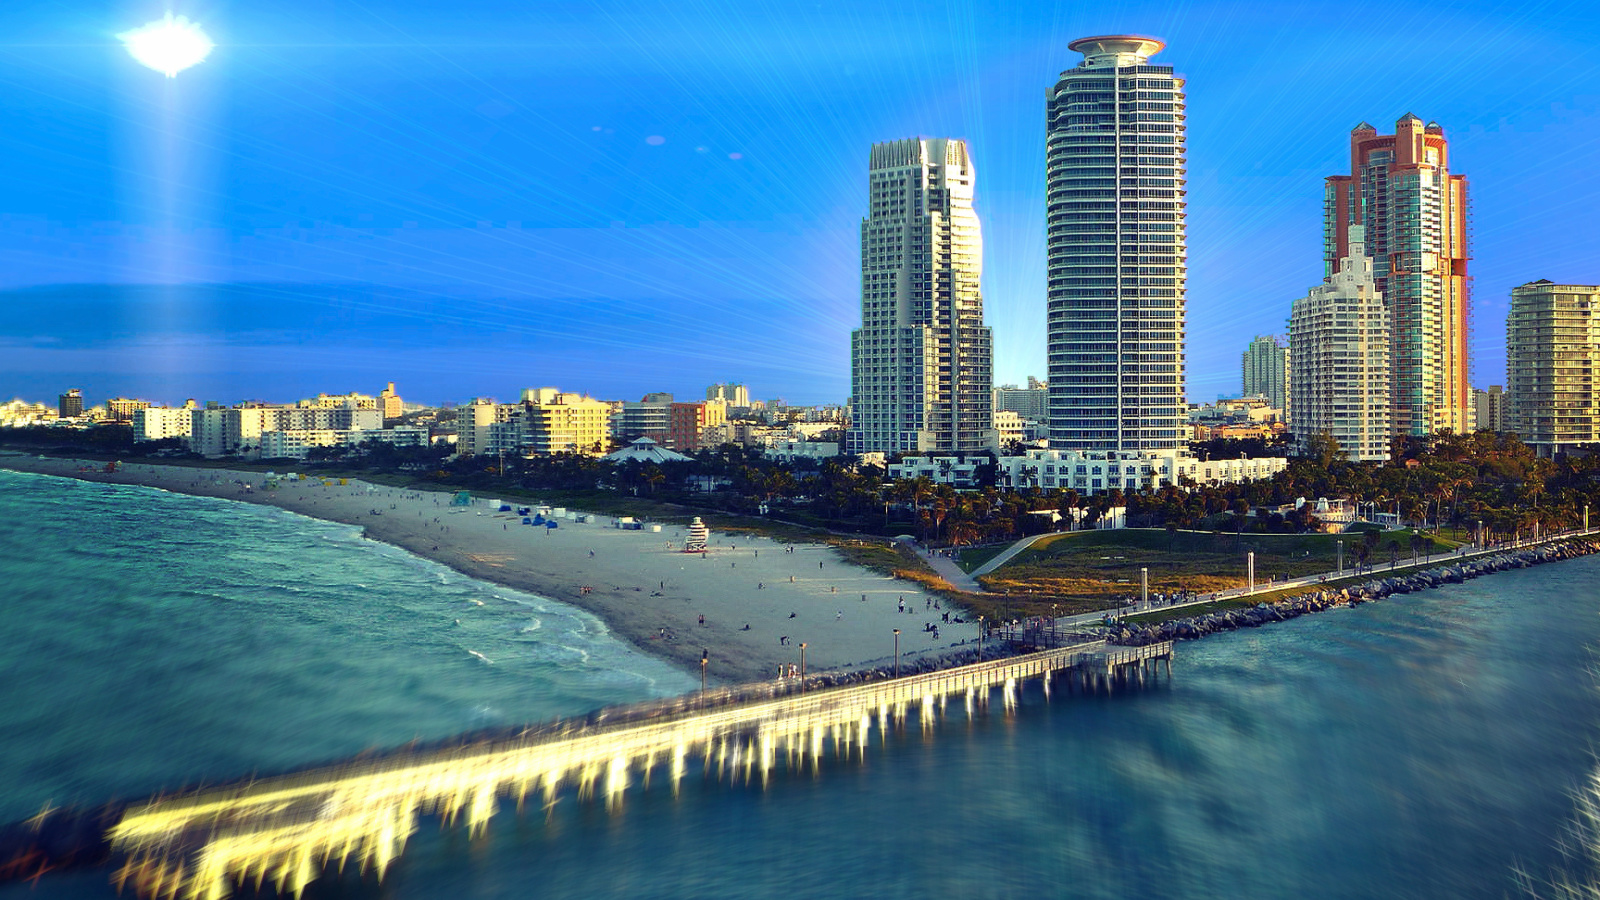 Sfondi Miami Beach with Hotels 1600x900